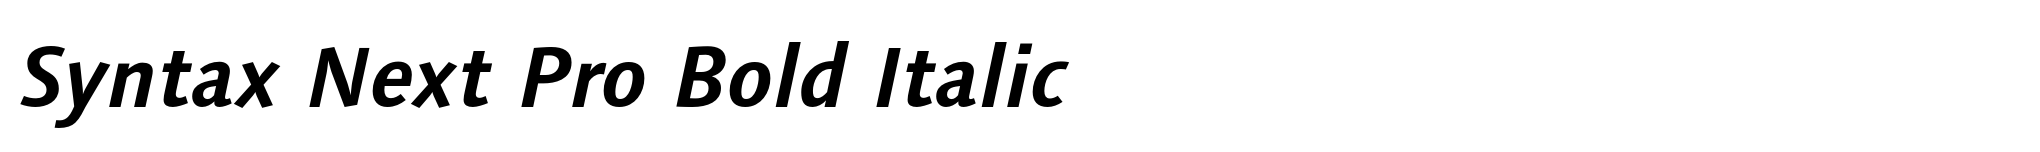 Syntax Next Pro Bold Italic image